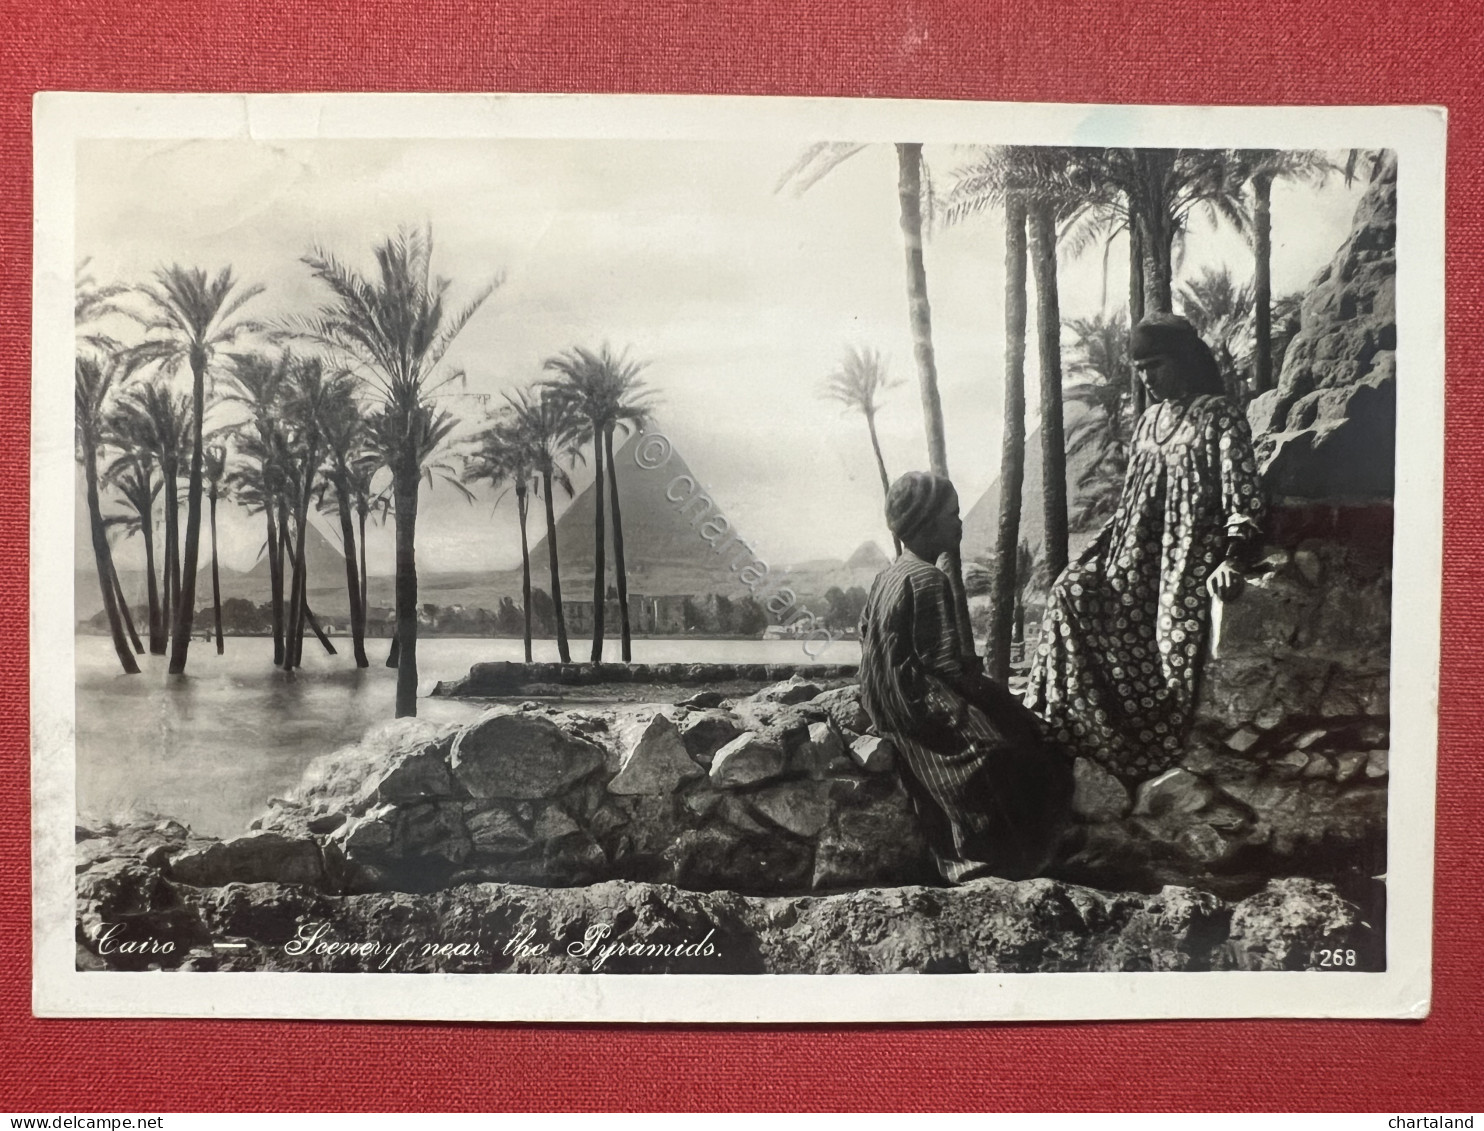 Cartolina - Cairo - Scenery Near The Pyramids - 1935 - Unclassified